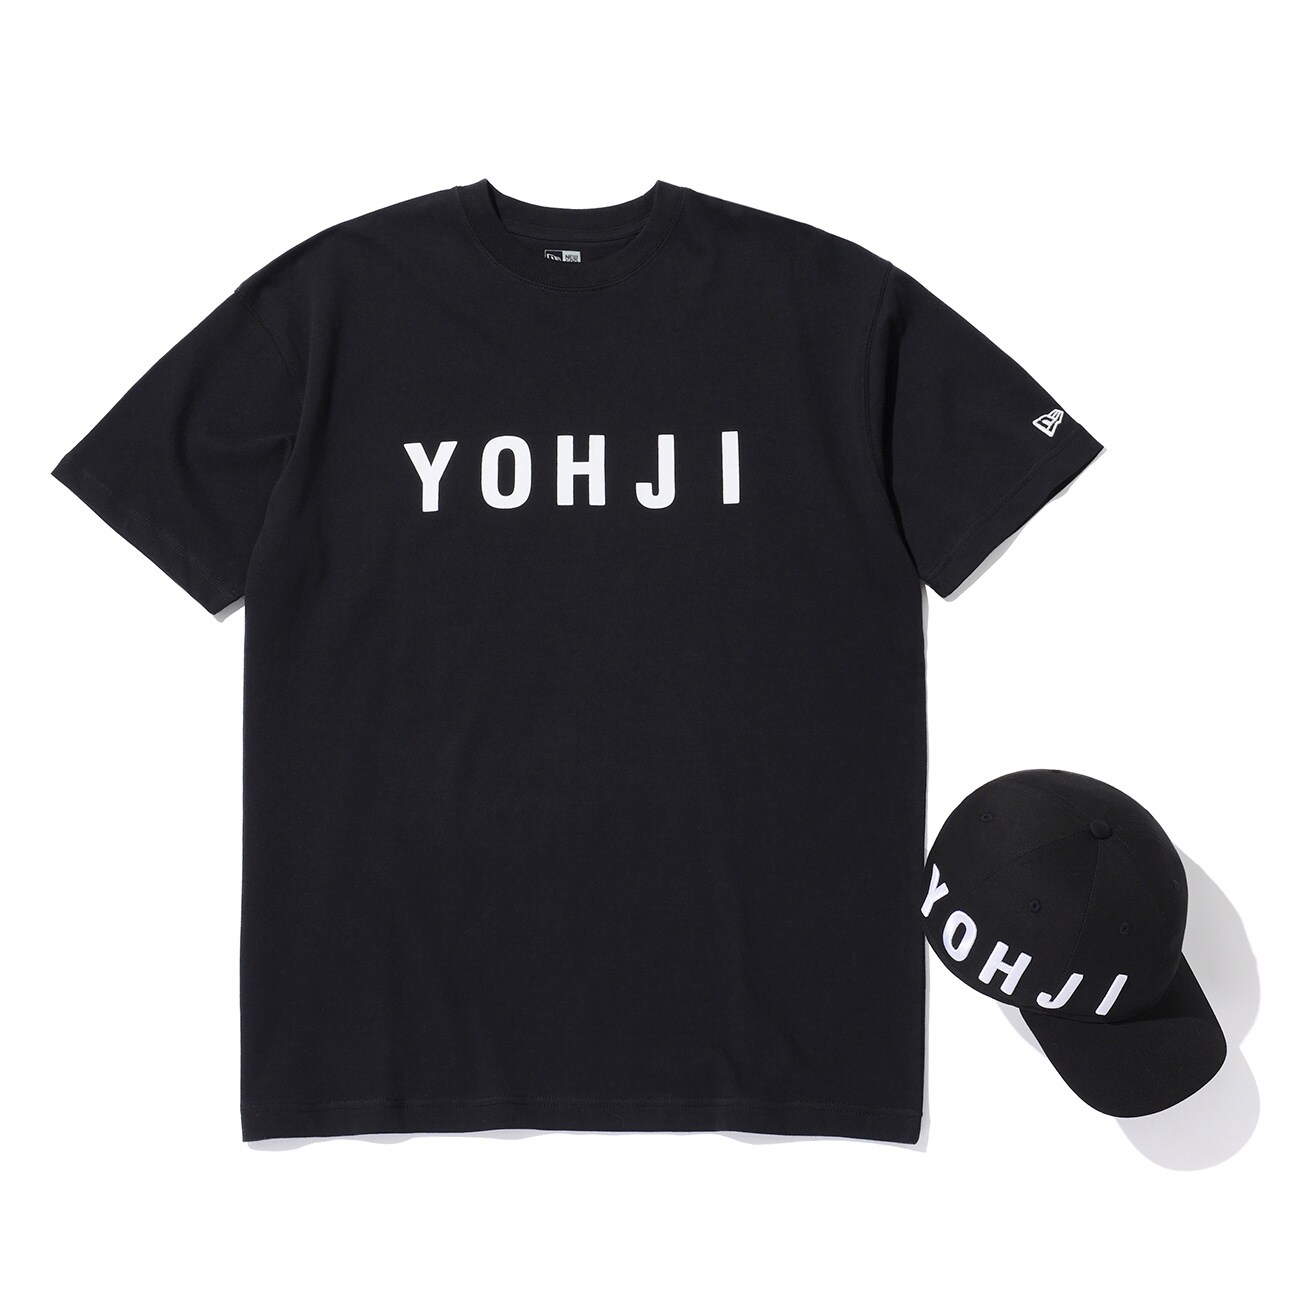 Yohji Yamamoto×New Era BLOCK TYPEFACE <YOHJI> EMBROIDERY 9THIRTY